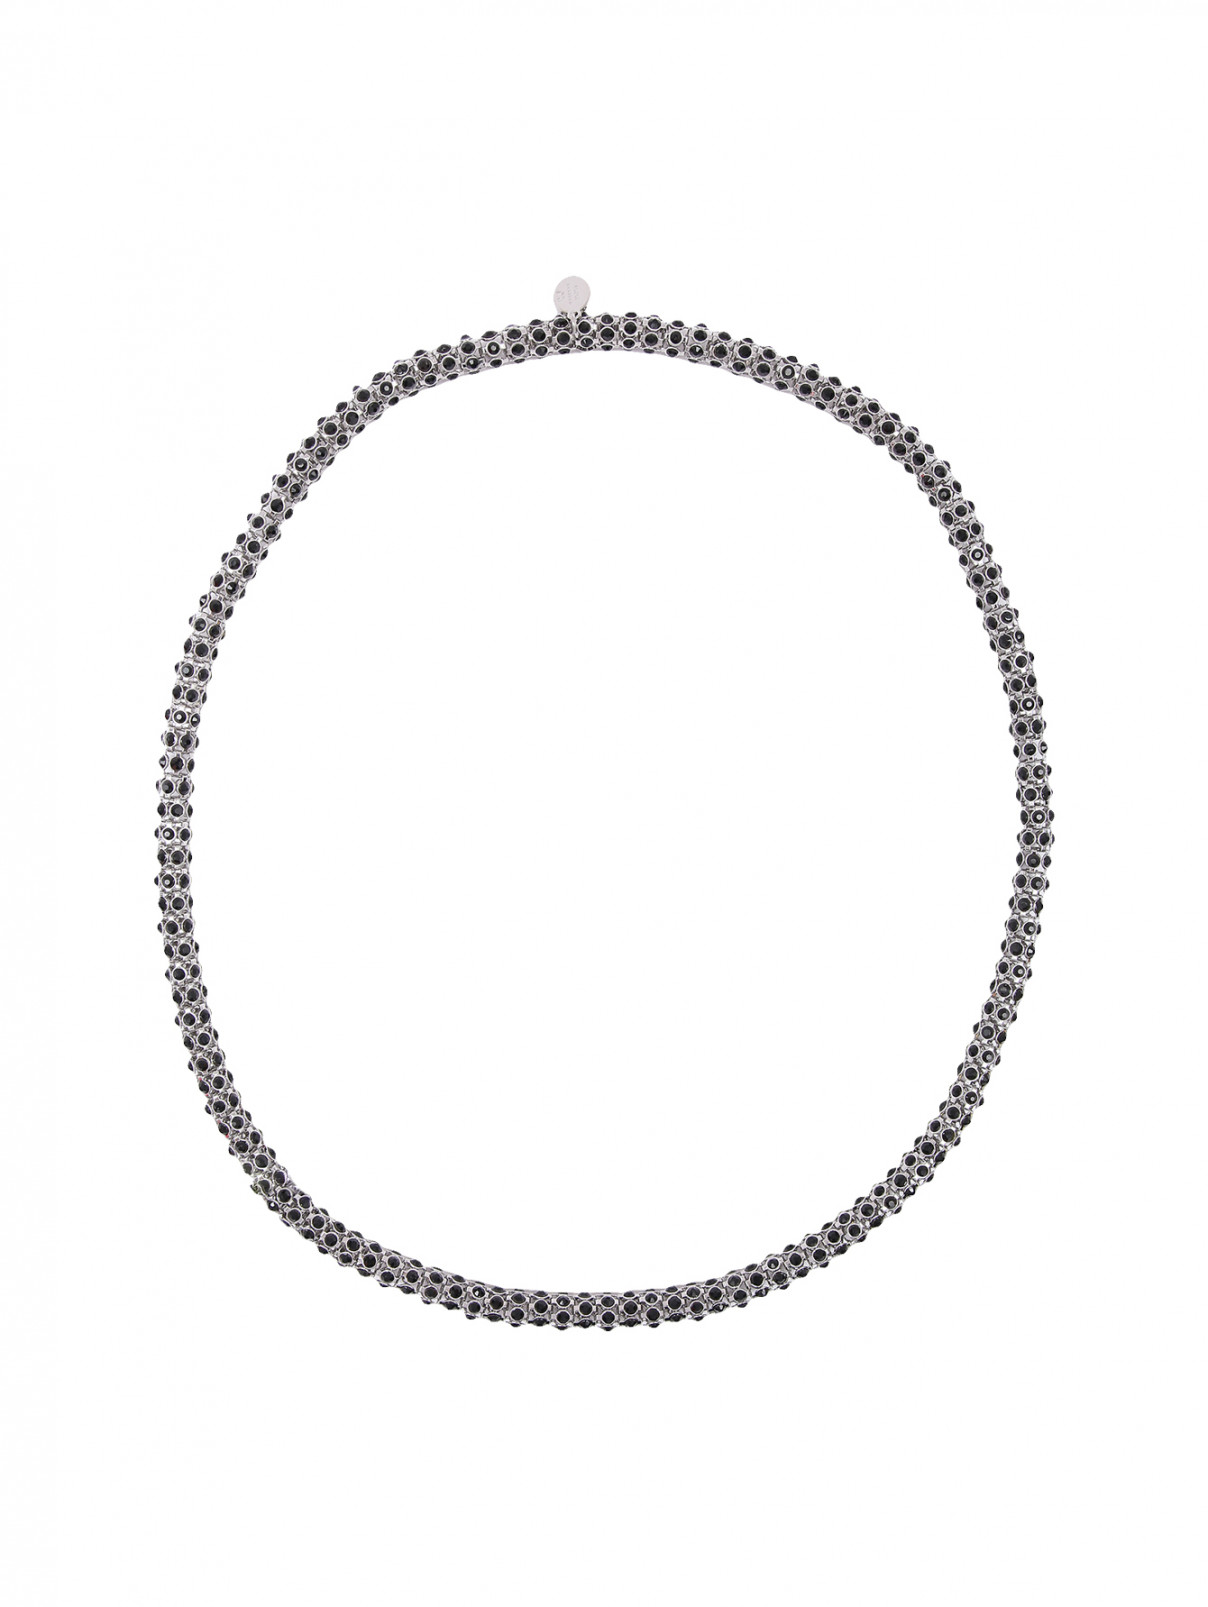 Ожерелье из металла с кристаллами Weekend Max Mara  –  Общий вид  – Цвет:  Черный